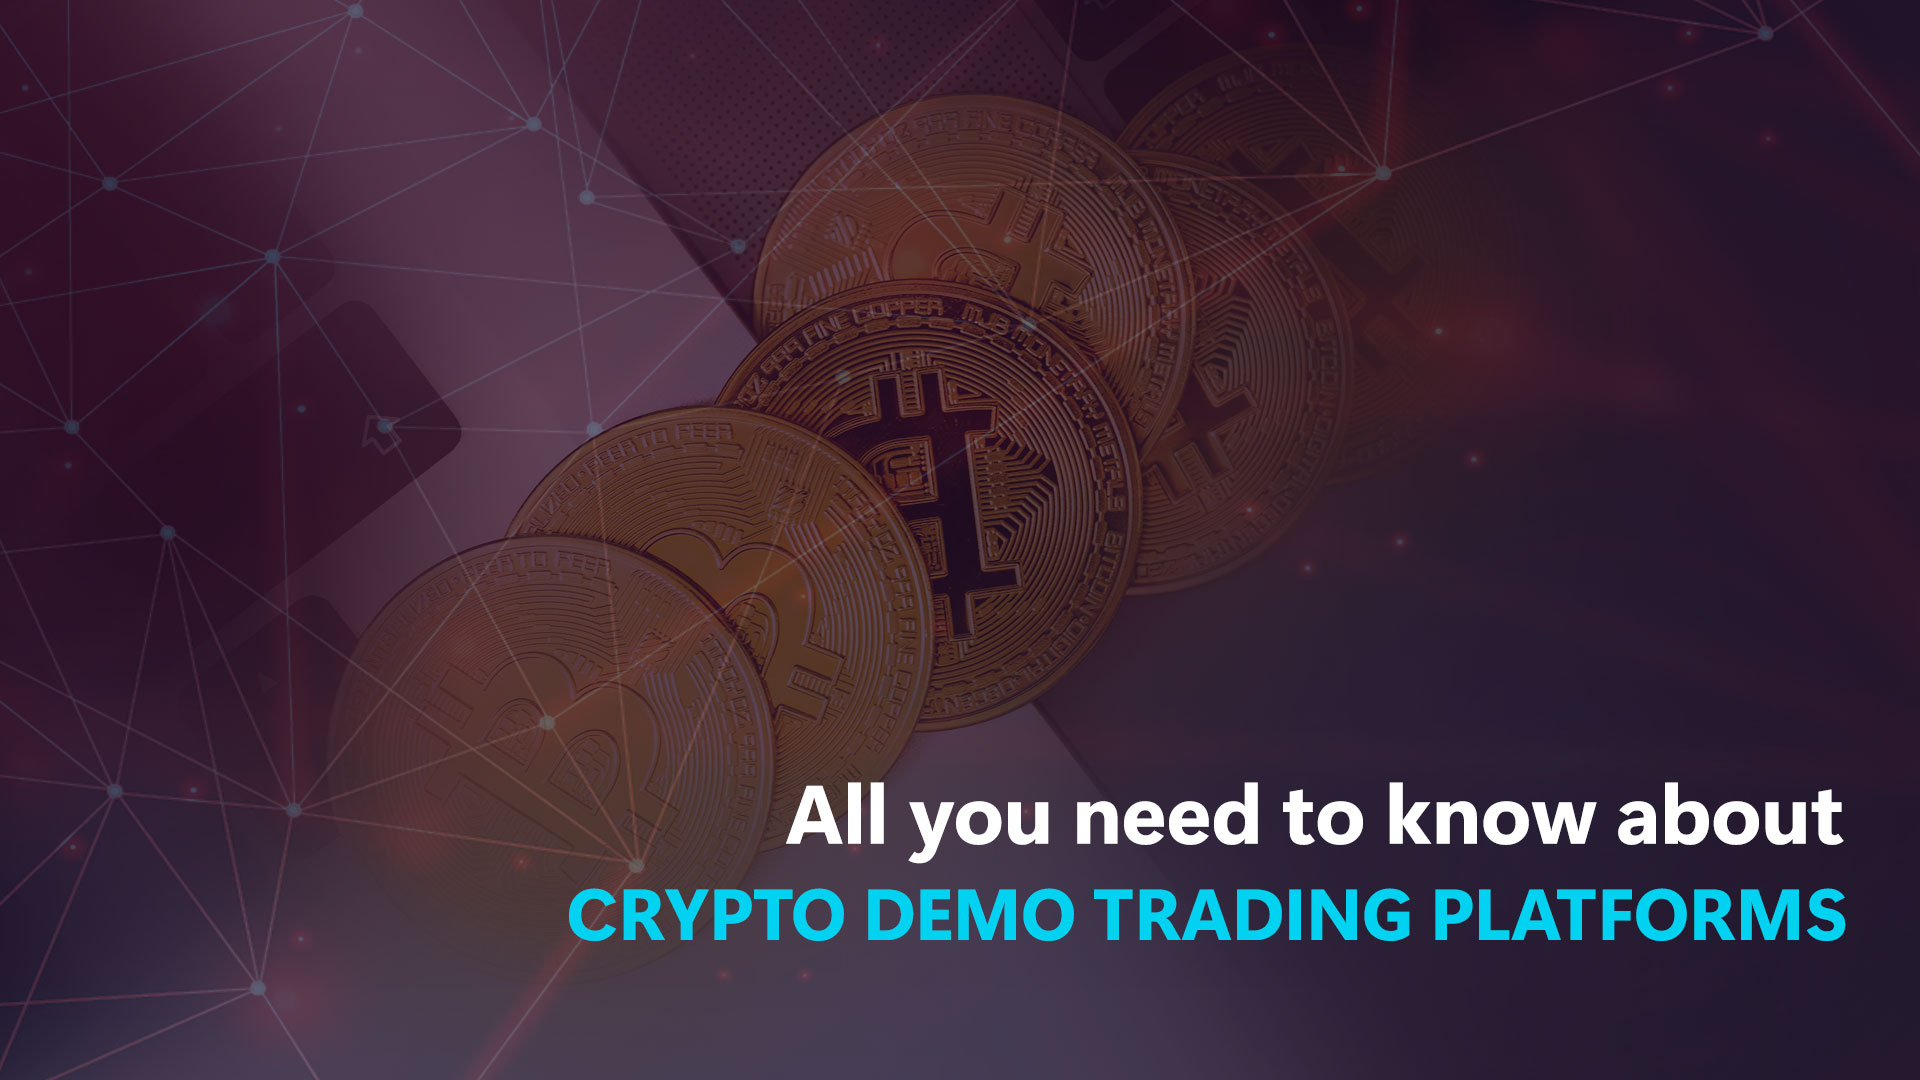 Tout ce que vous devez savoir sur les plateformes de trading Crypto demo